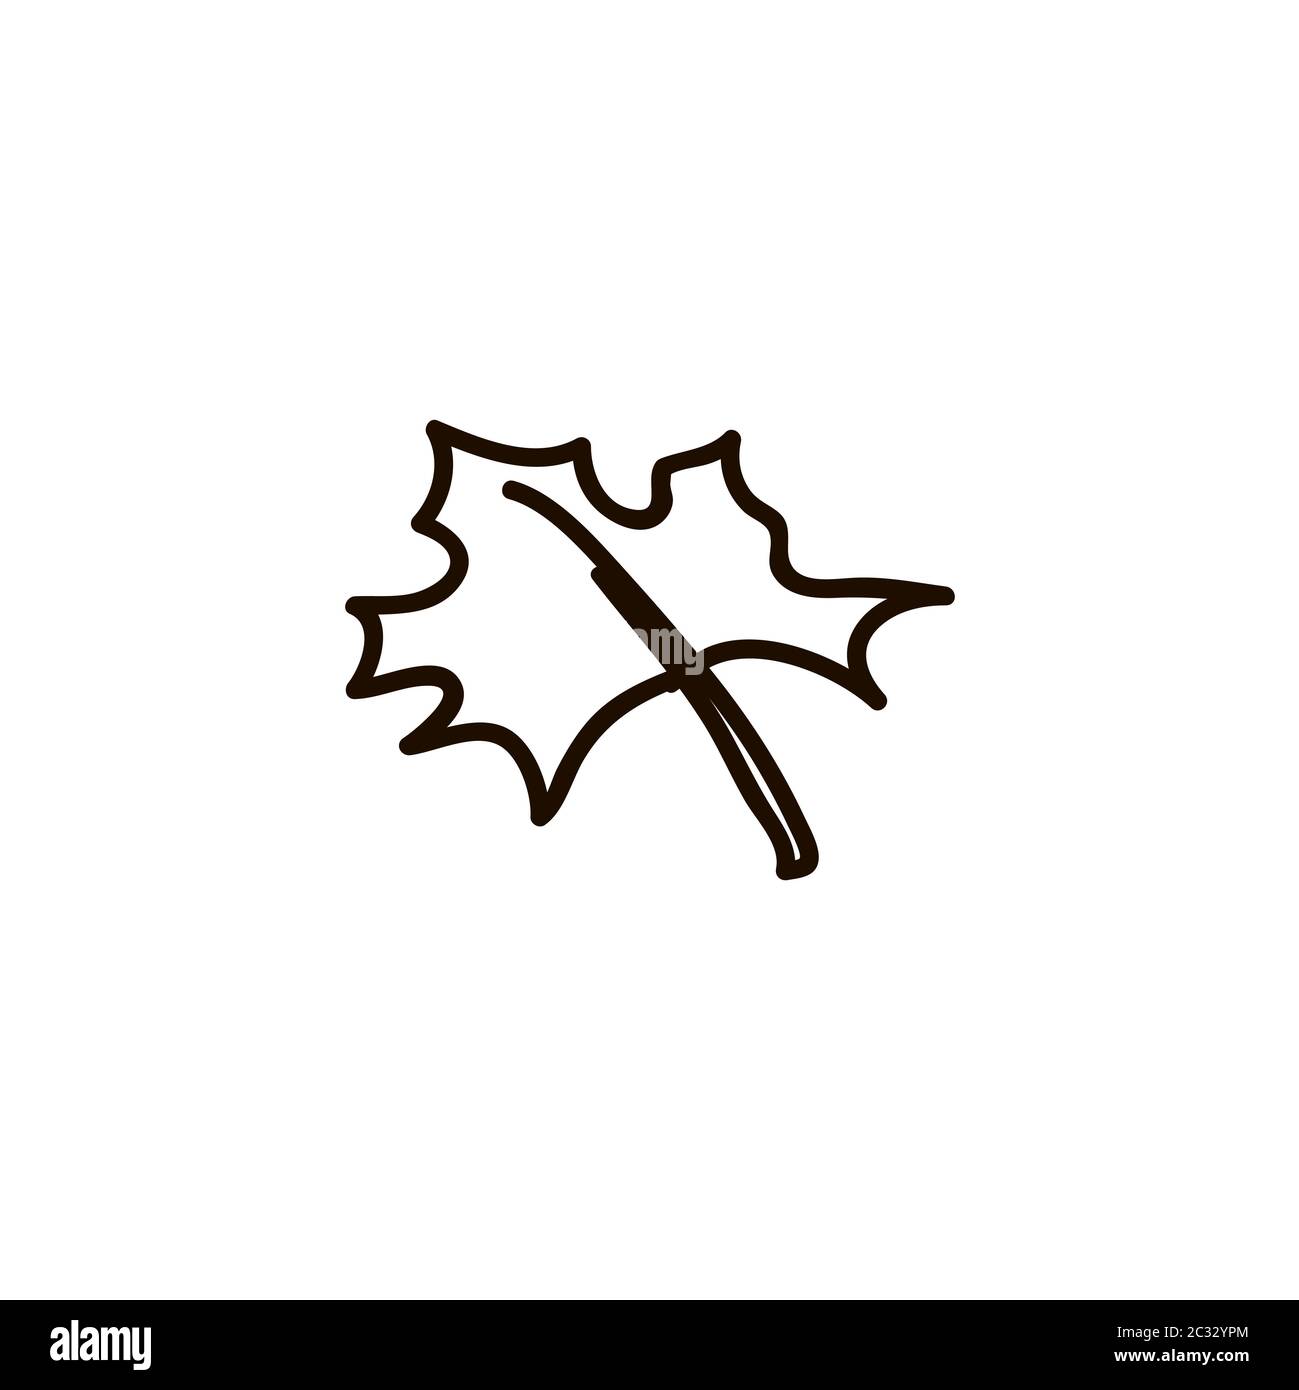 Clip Art: Maple Leaves